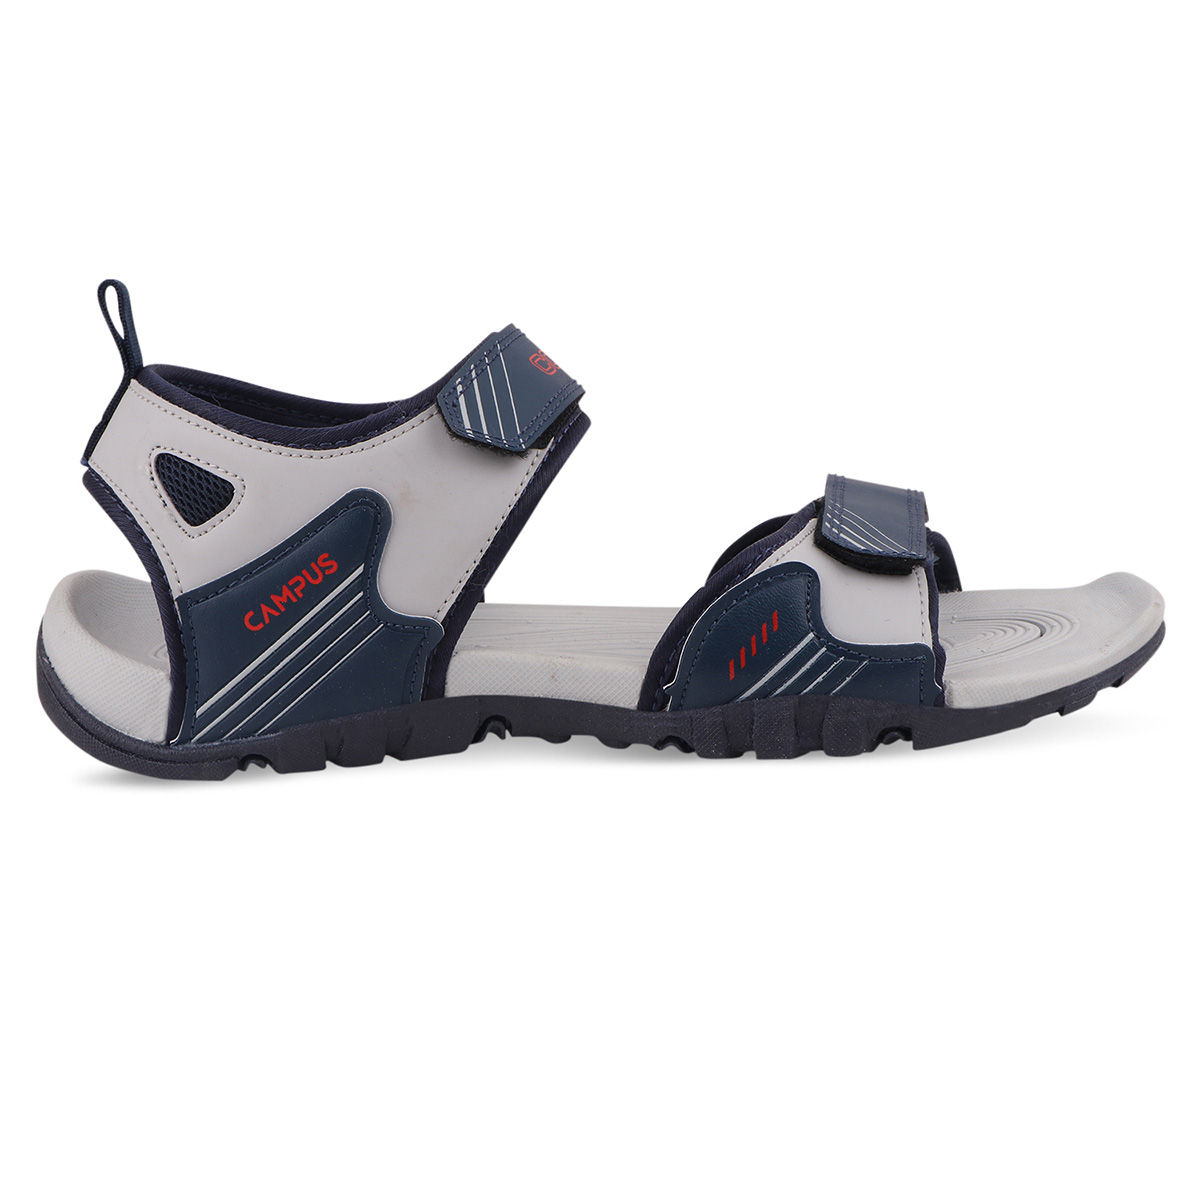 Buy Sandals For Men: Gc-22110-Blk-D-Gry | Campus Shoes